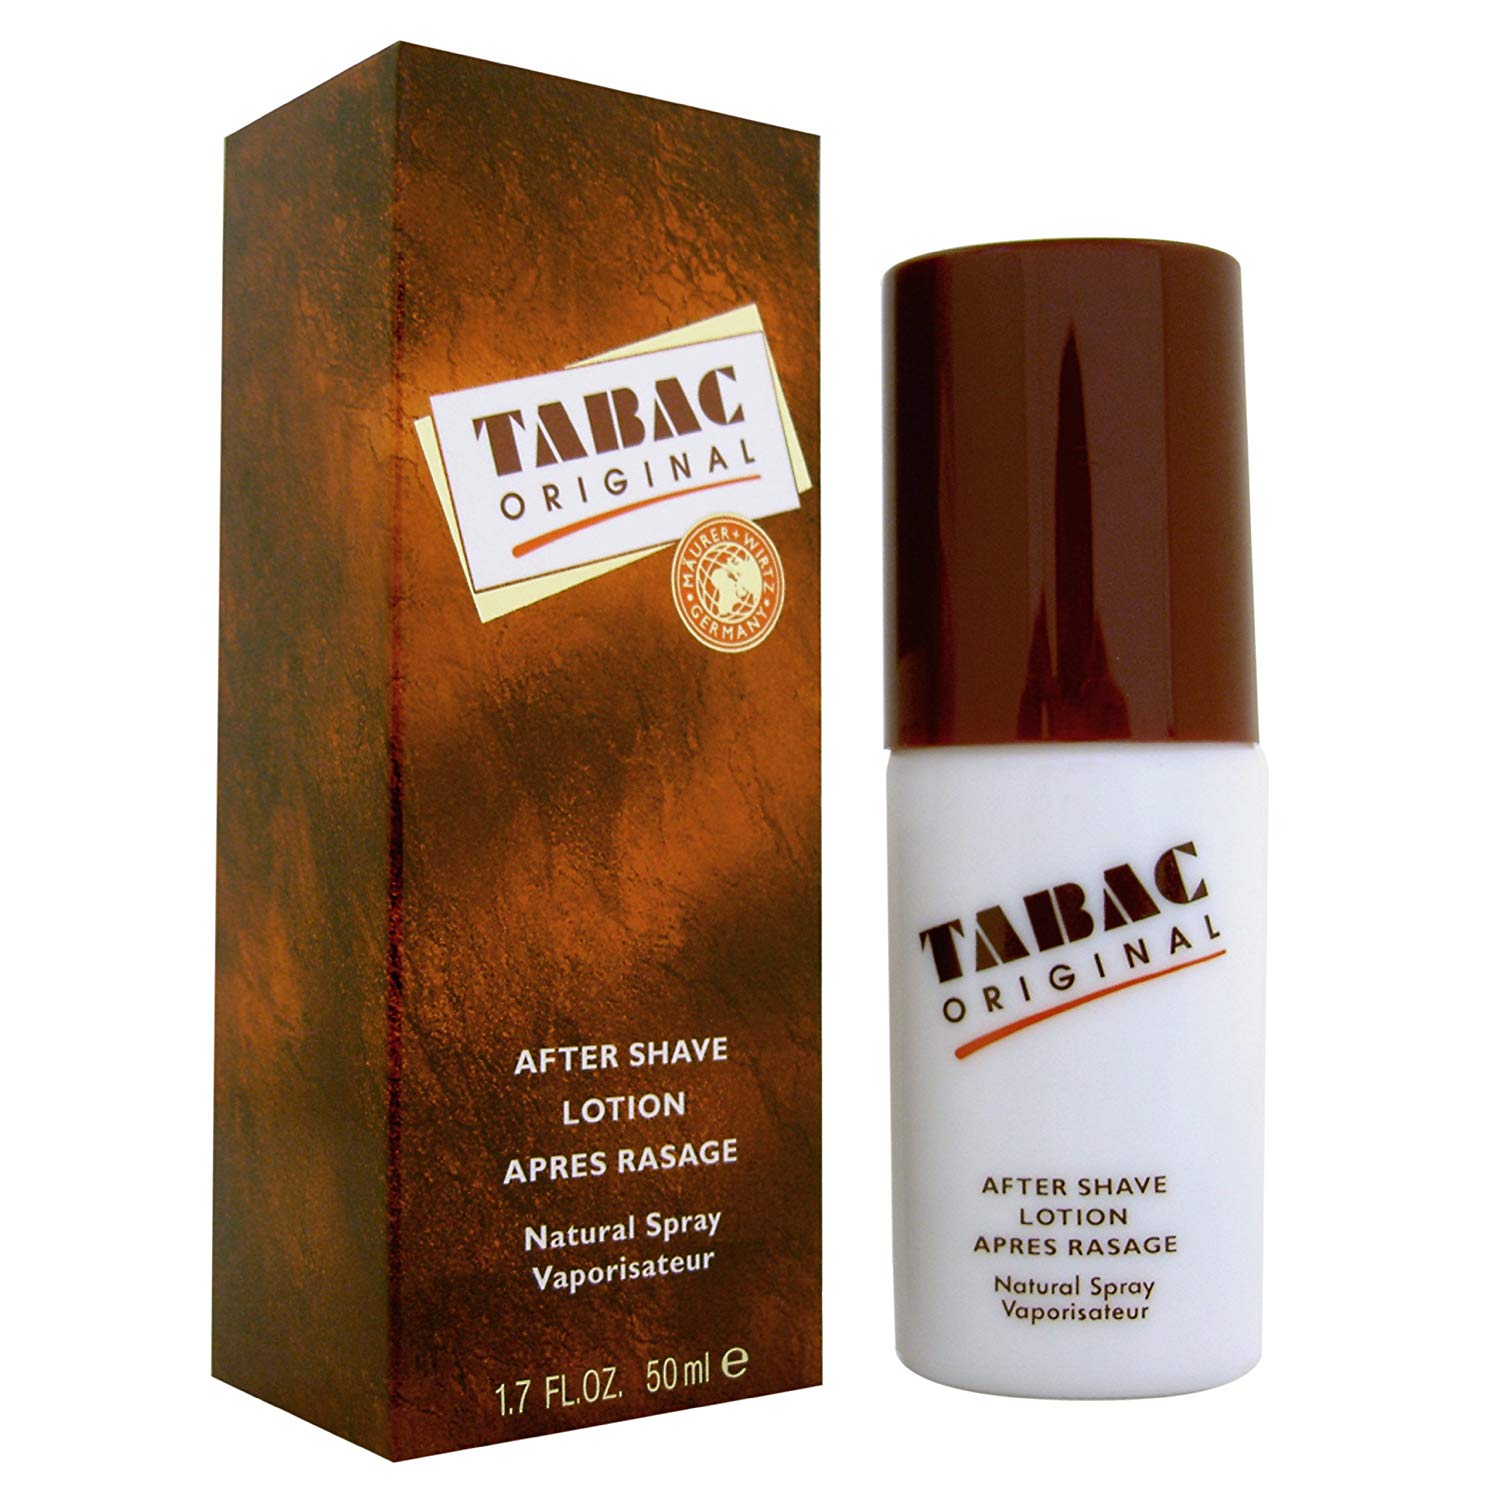 Mäurer & Wirtz Tabac Original Aftershave 50ml Spray